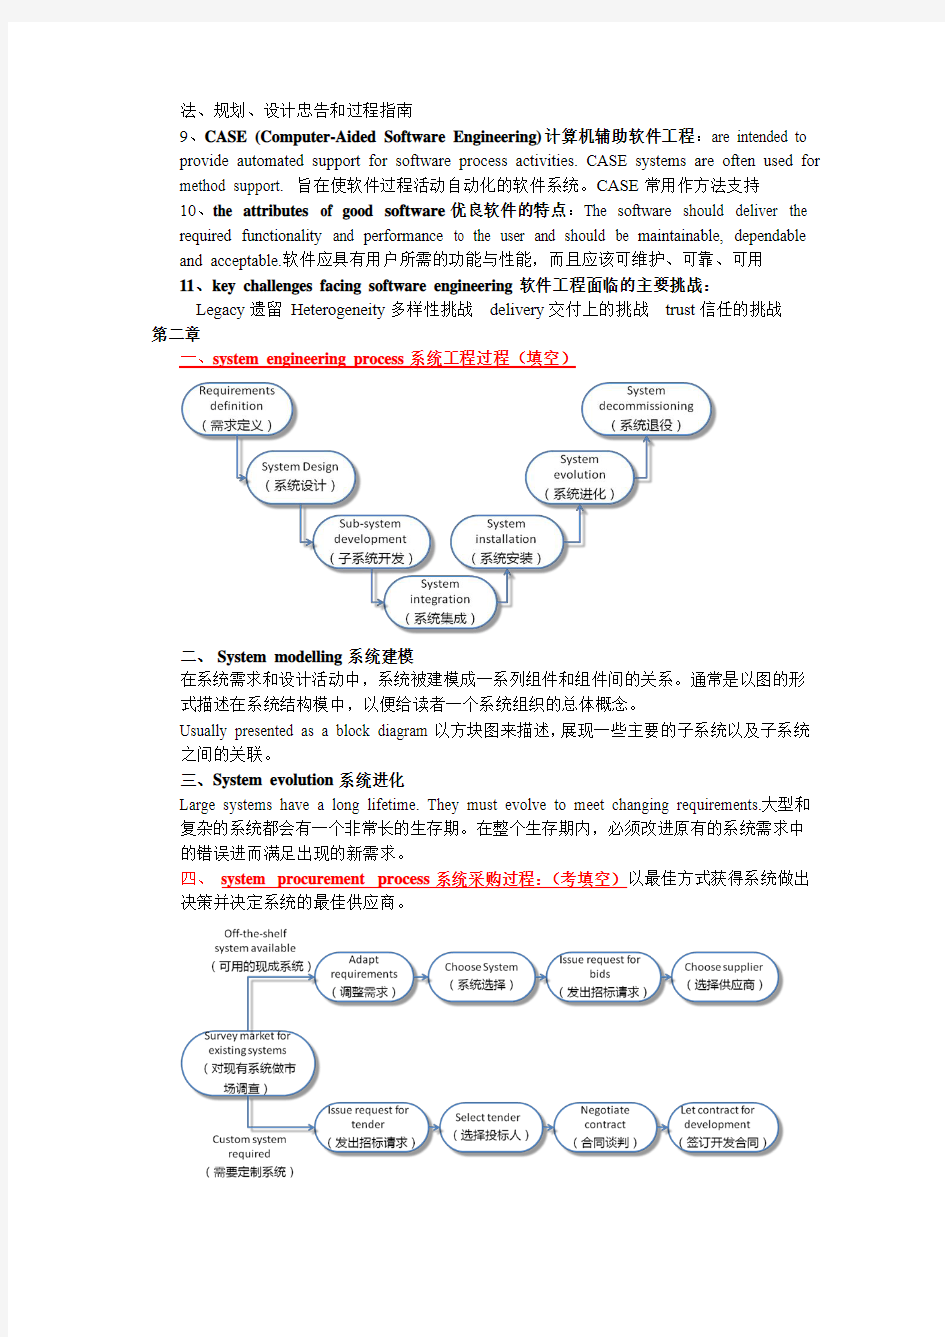 天津理工大学-软件工程总结(红字是考点)分析解析